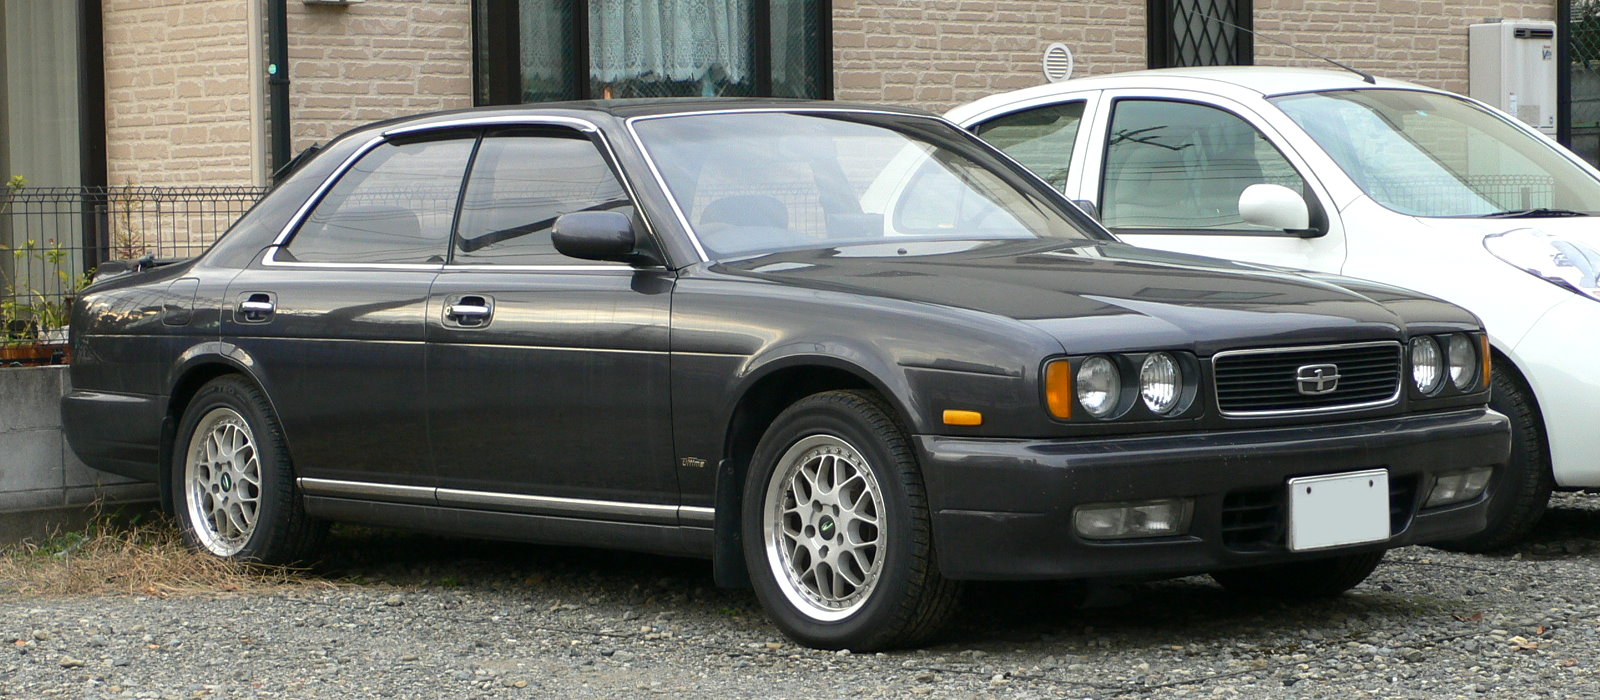 File:1991 Nissan Gloria 01.jpg